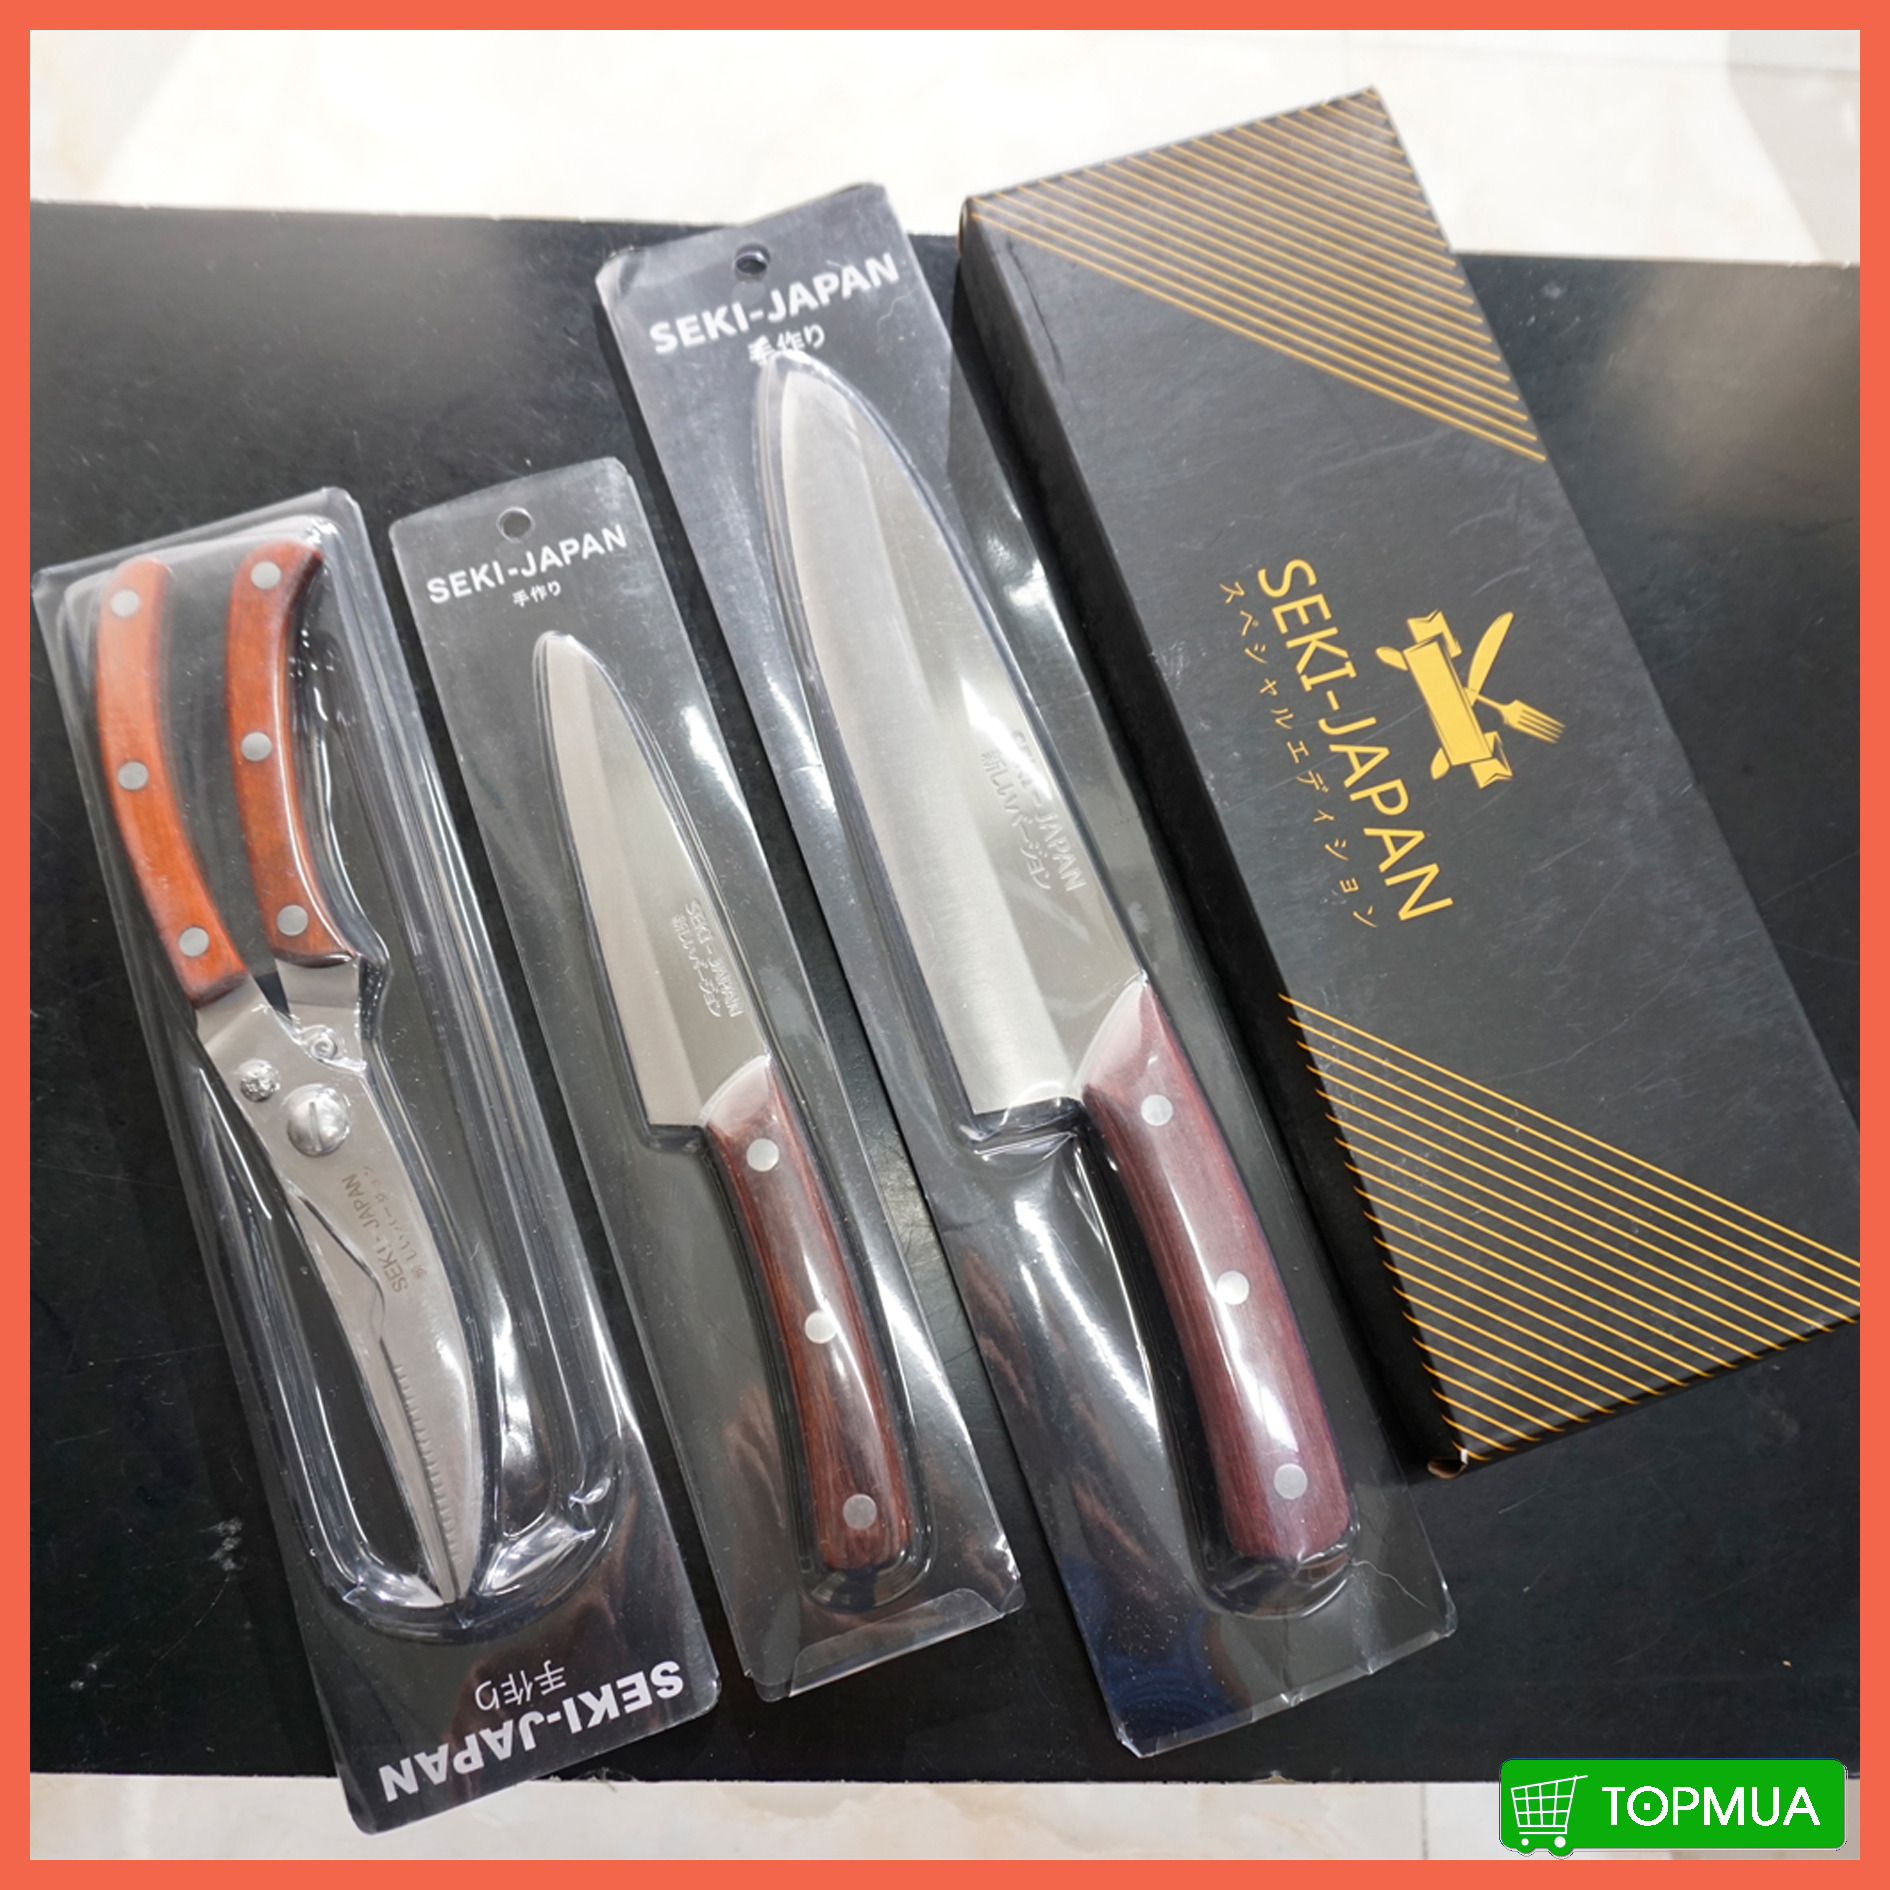 [HCM]Bộ 4 dao chặt dao gọt dao thái kéo cắt gà thương hiệu Seki Japan hàng nội địa Nhật chính hãng - TOPMUANET